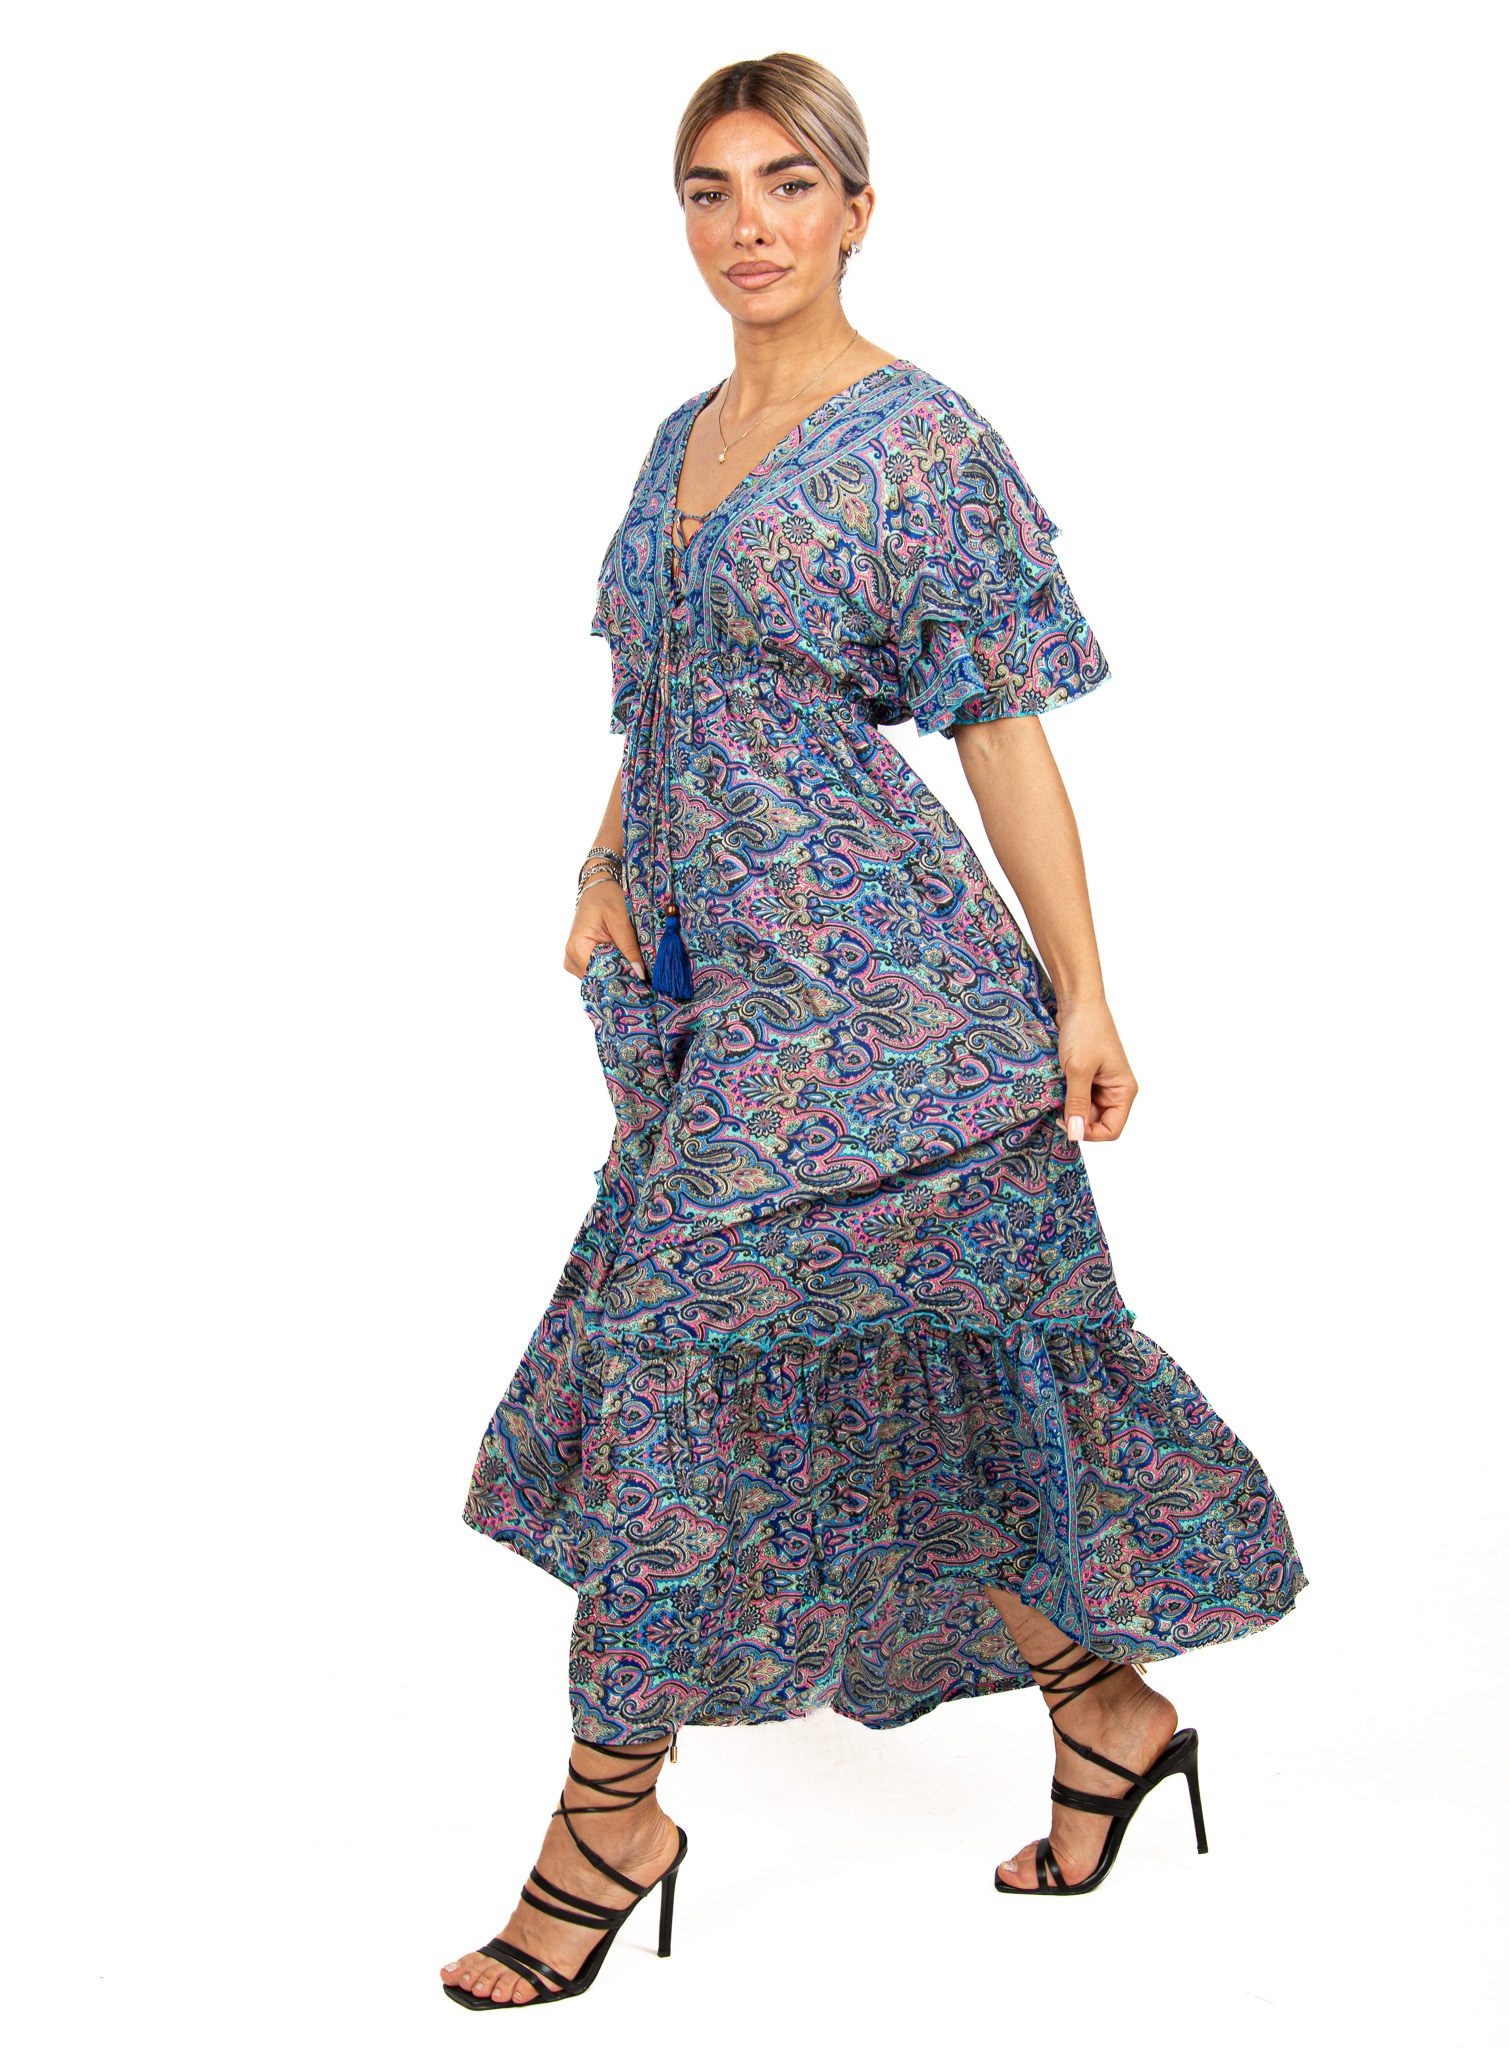 Φόρεμα Μεταξωτό με Βολάν Μανίκια Μπλε | EllenBoutique